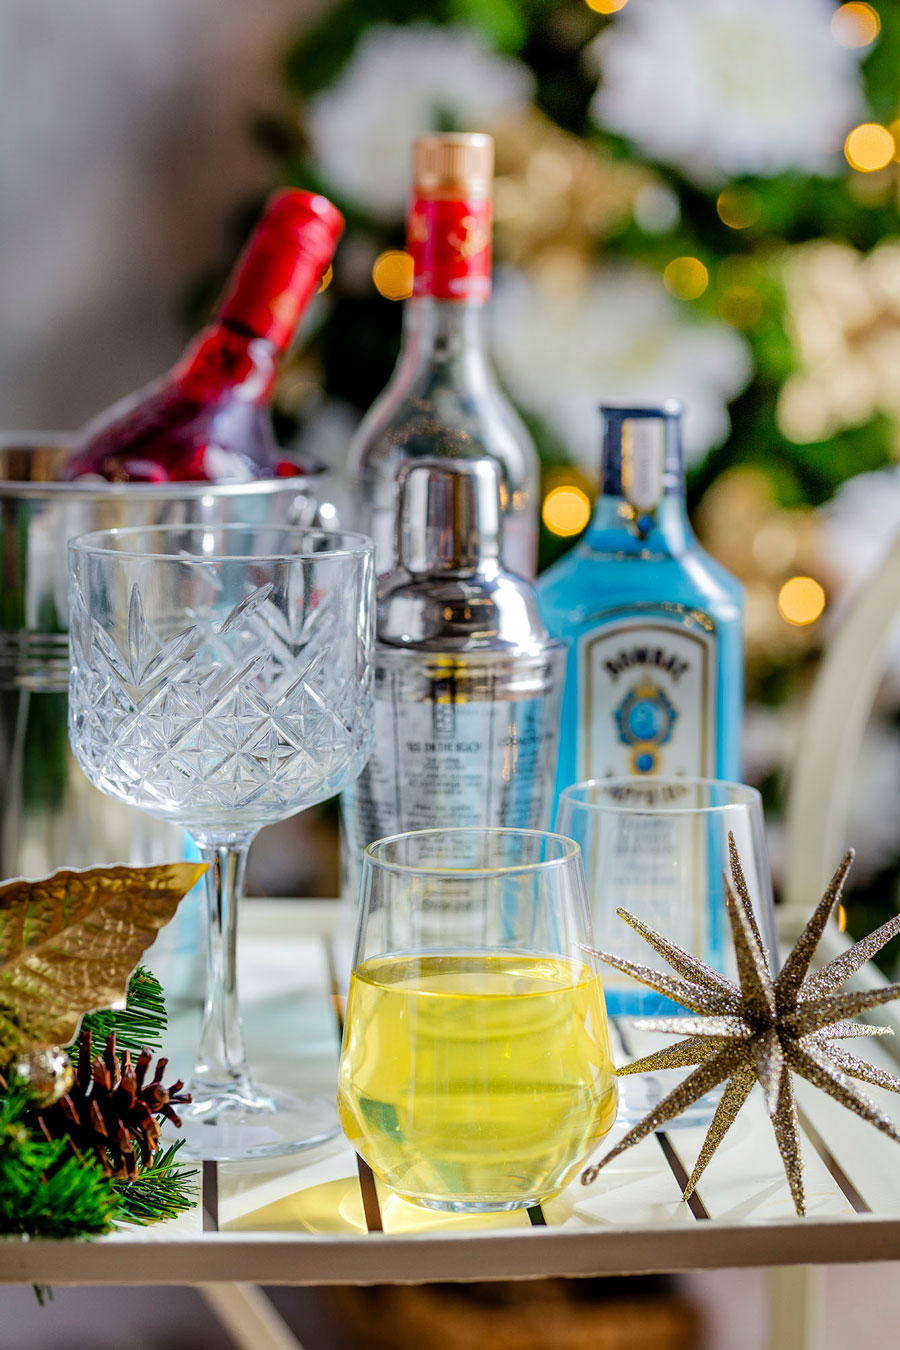 Bandeja con botellas de tragos, copas y vasos con bebidas y pequeños adornos navideños.